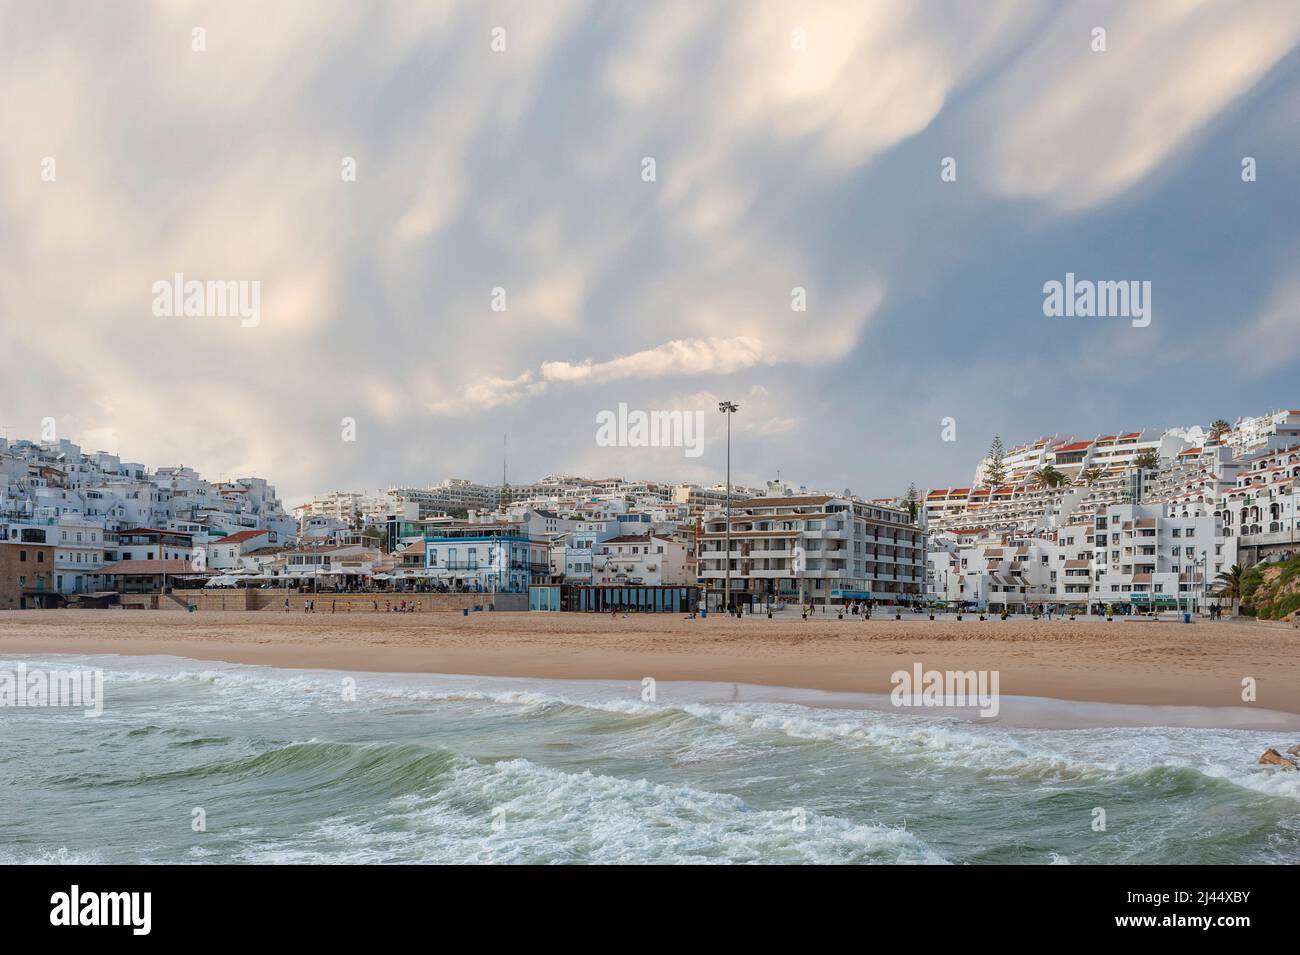 Paysage urbain avec la plage des pêcheurs, Praia dos Pescadores, Albufeira, Algarve, Portugal, Europe Banque D'Images